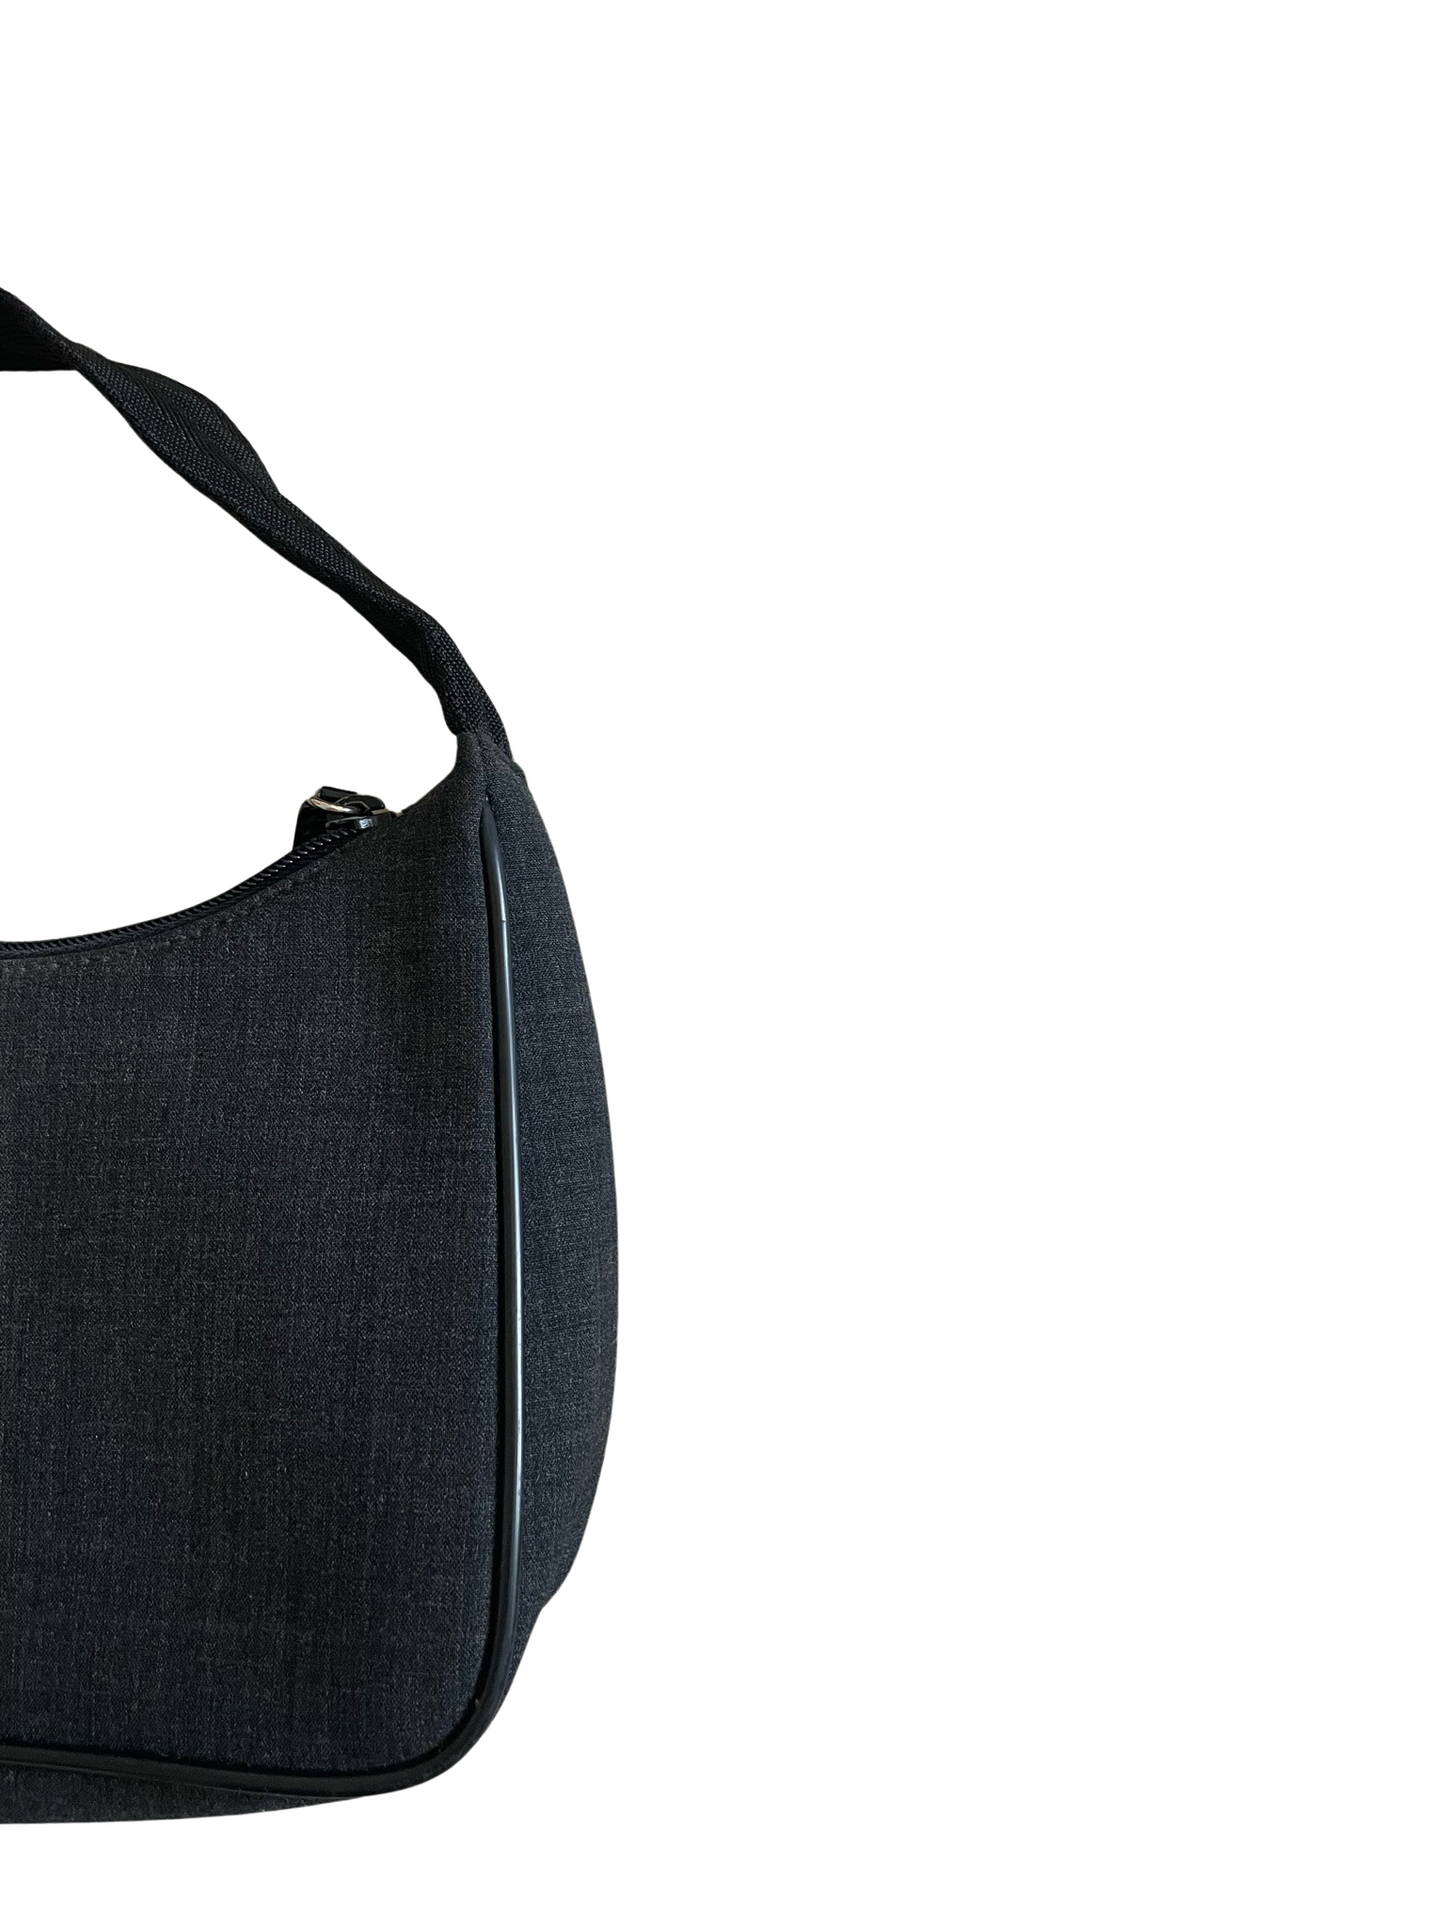 Prada Dark Gray Fiber Handbag